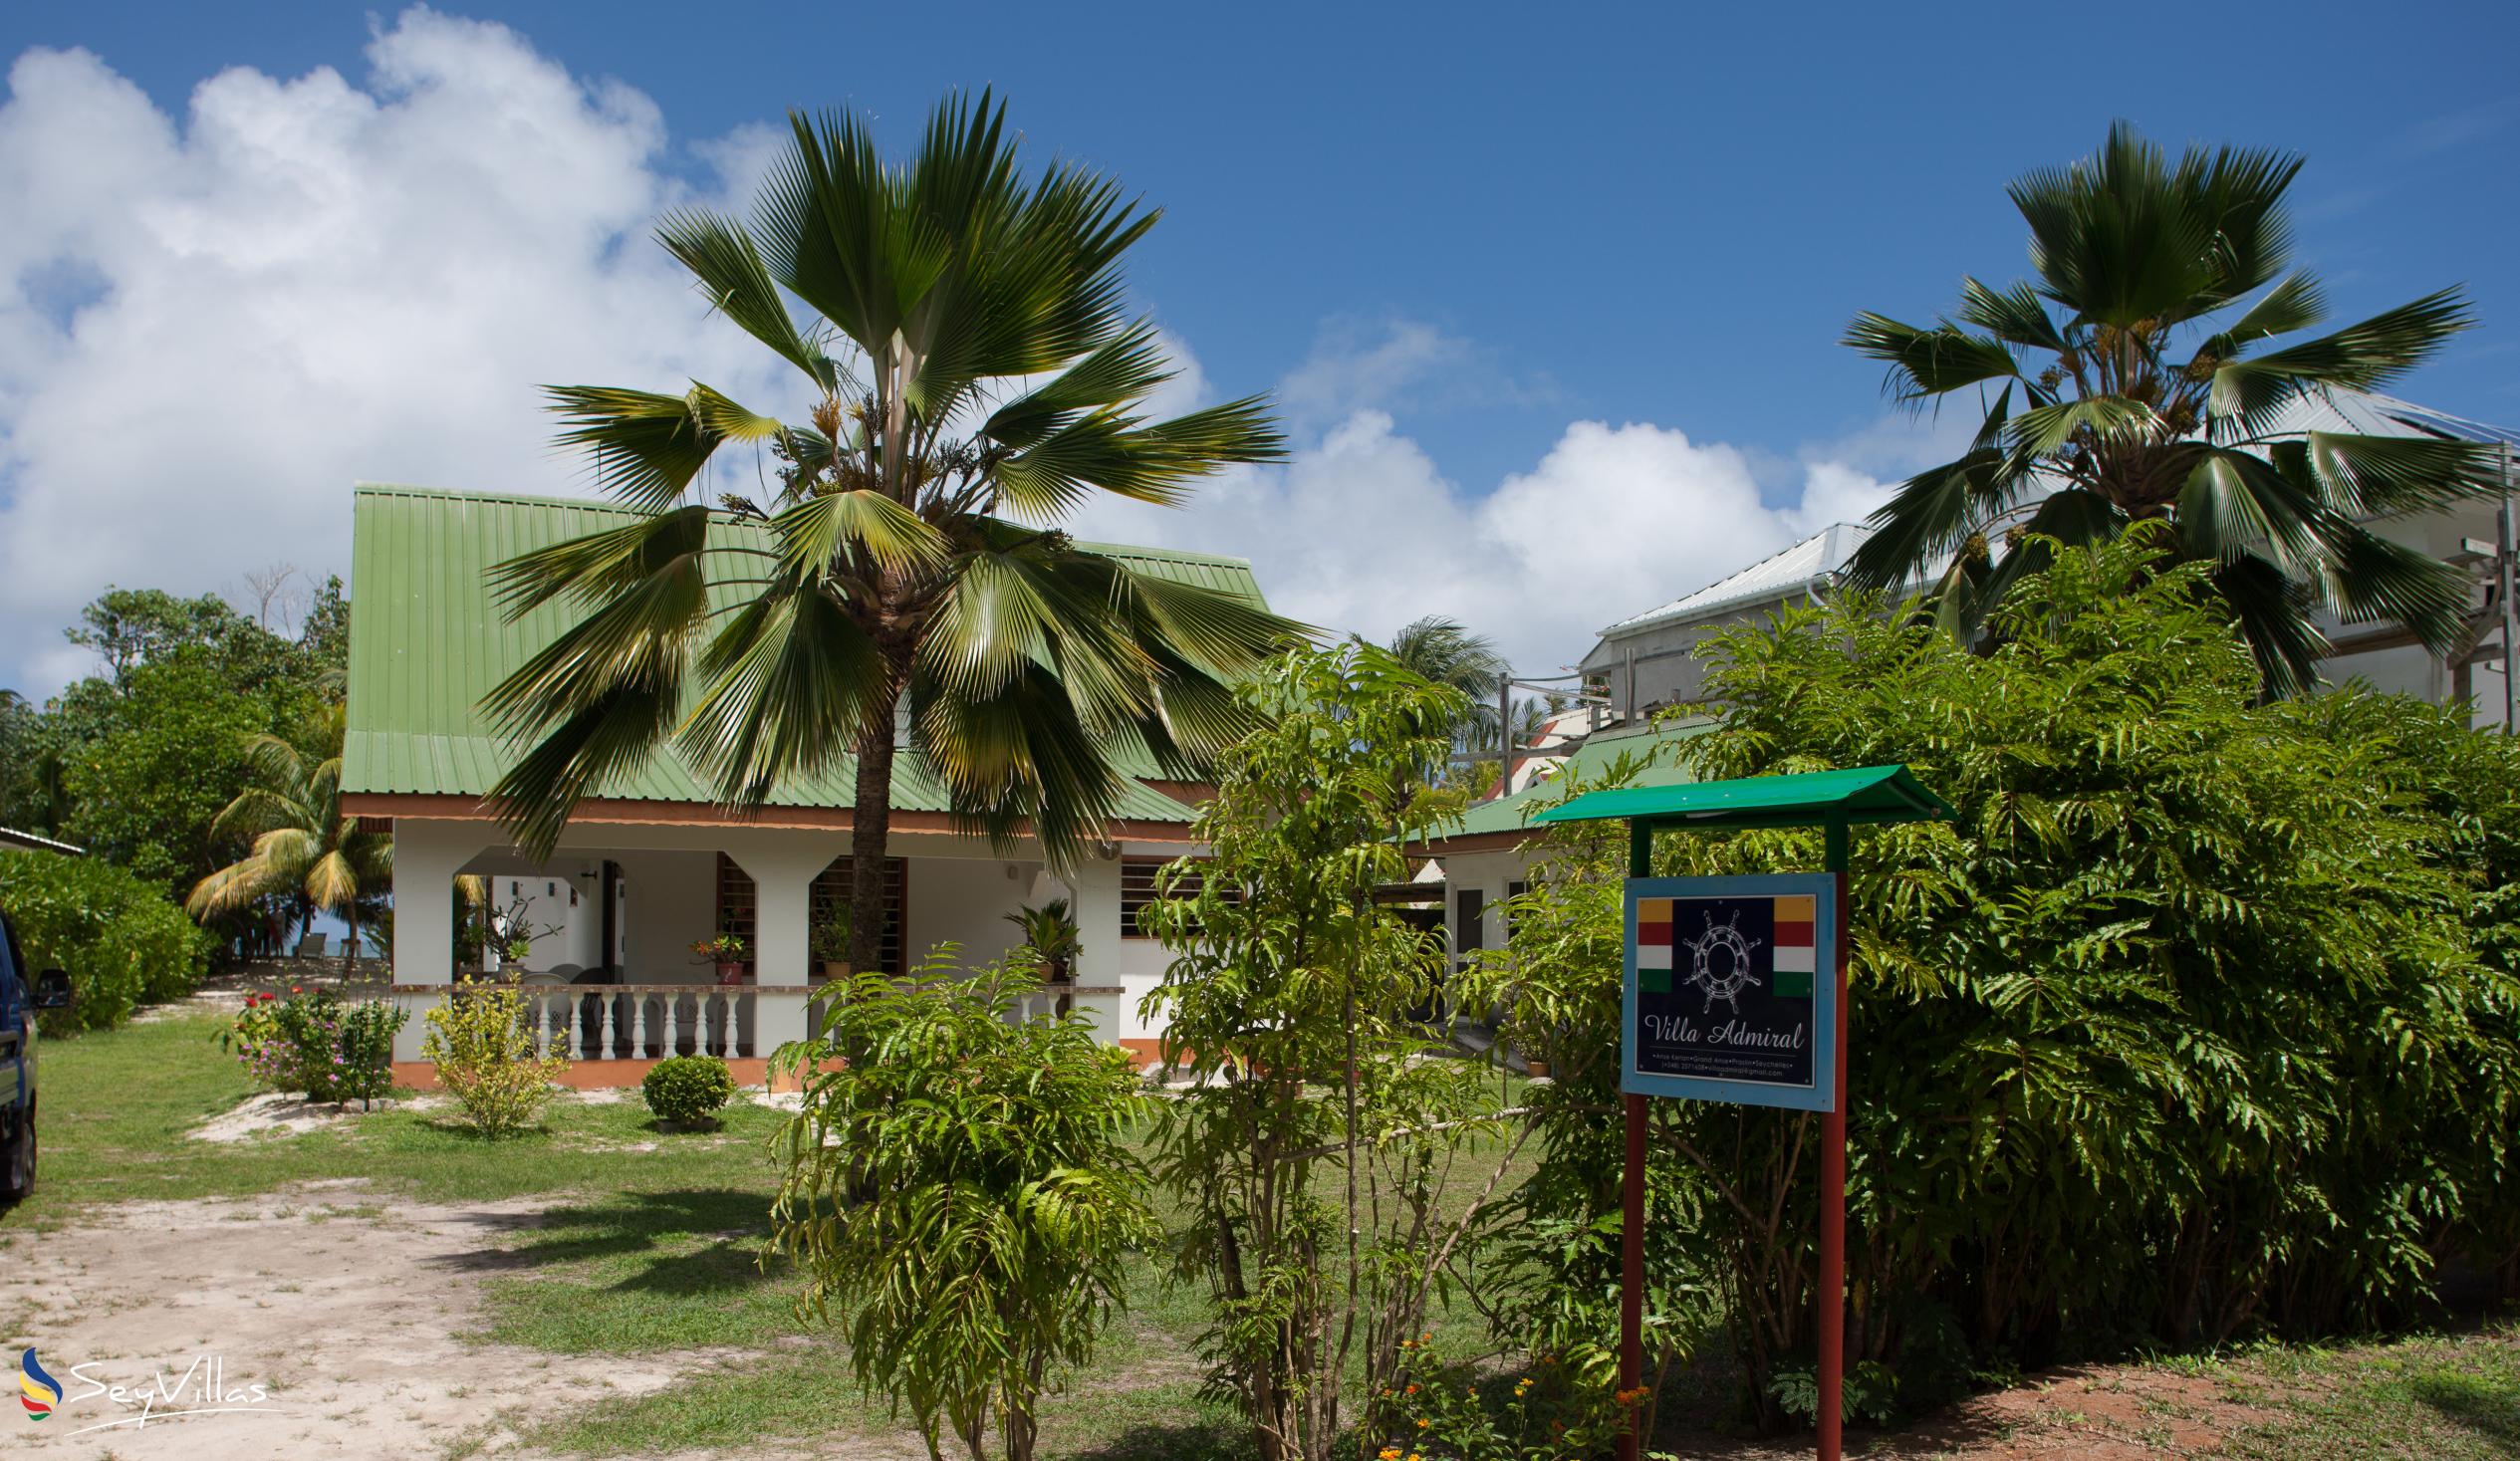 Foto 4: Villa Admiral - Aussenbereich - Praslin (Seychellen)